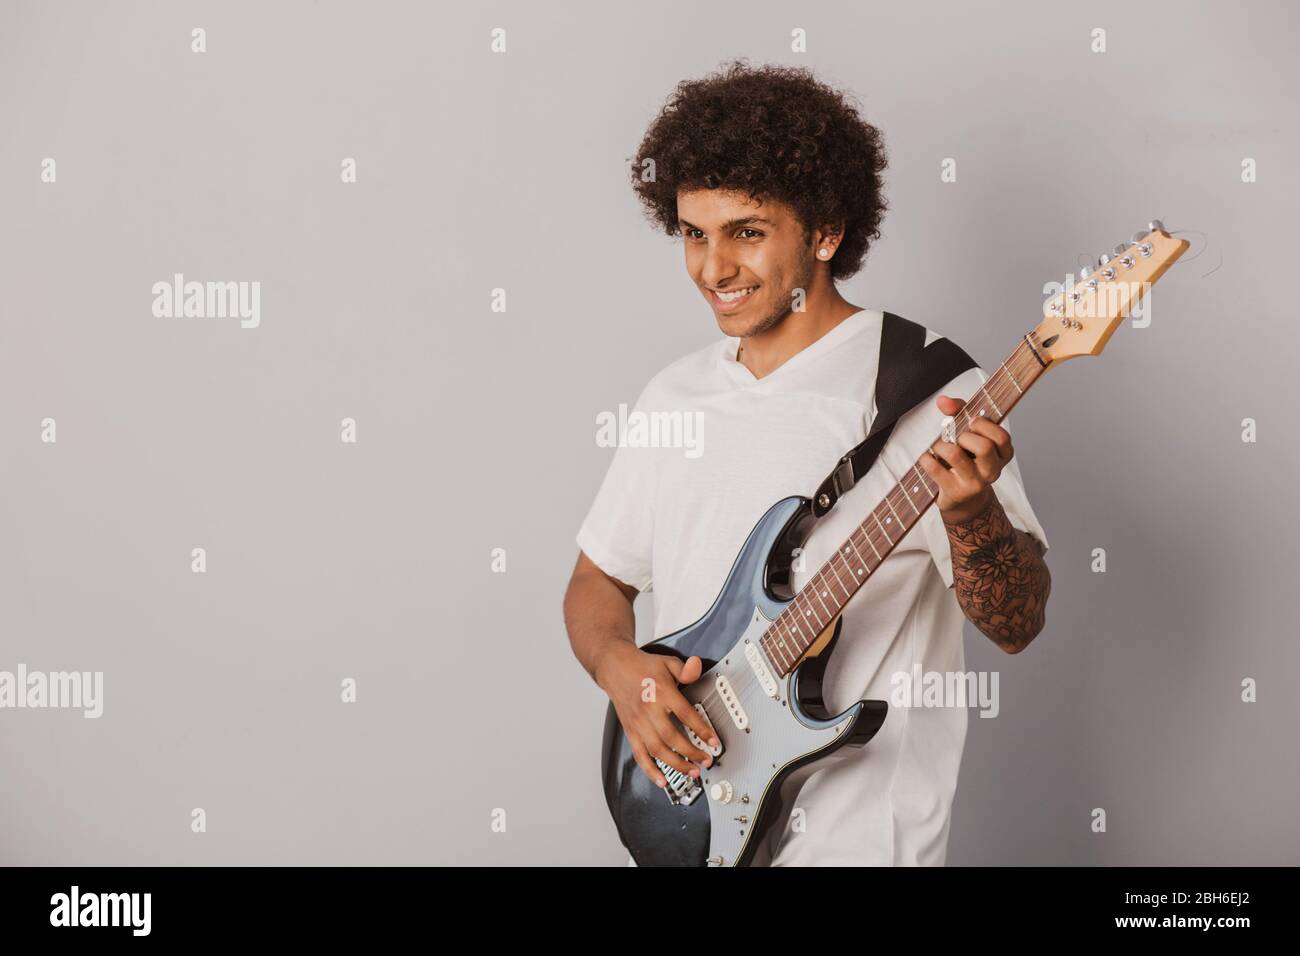 Positiv gelockte Mann, ausdrucksstark spielt die Bassgitarre, auf grauem Hintergrund. Fröhlicher Musiker. Stockfoto